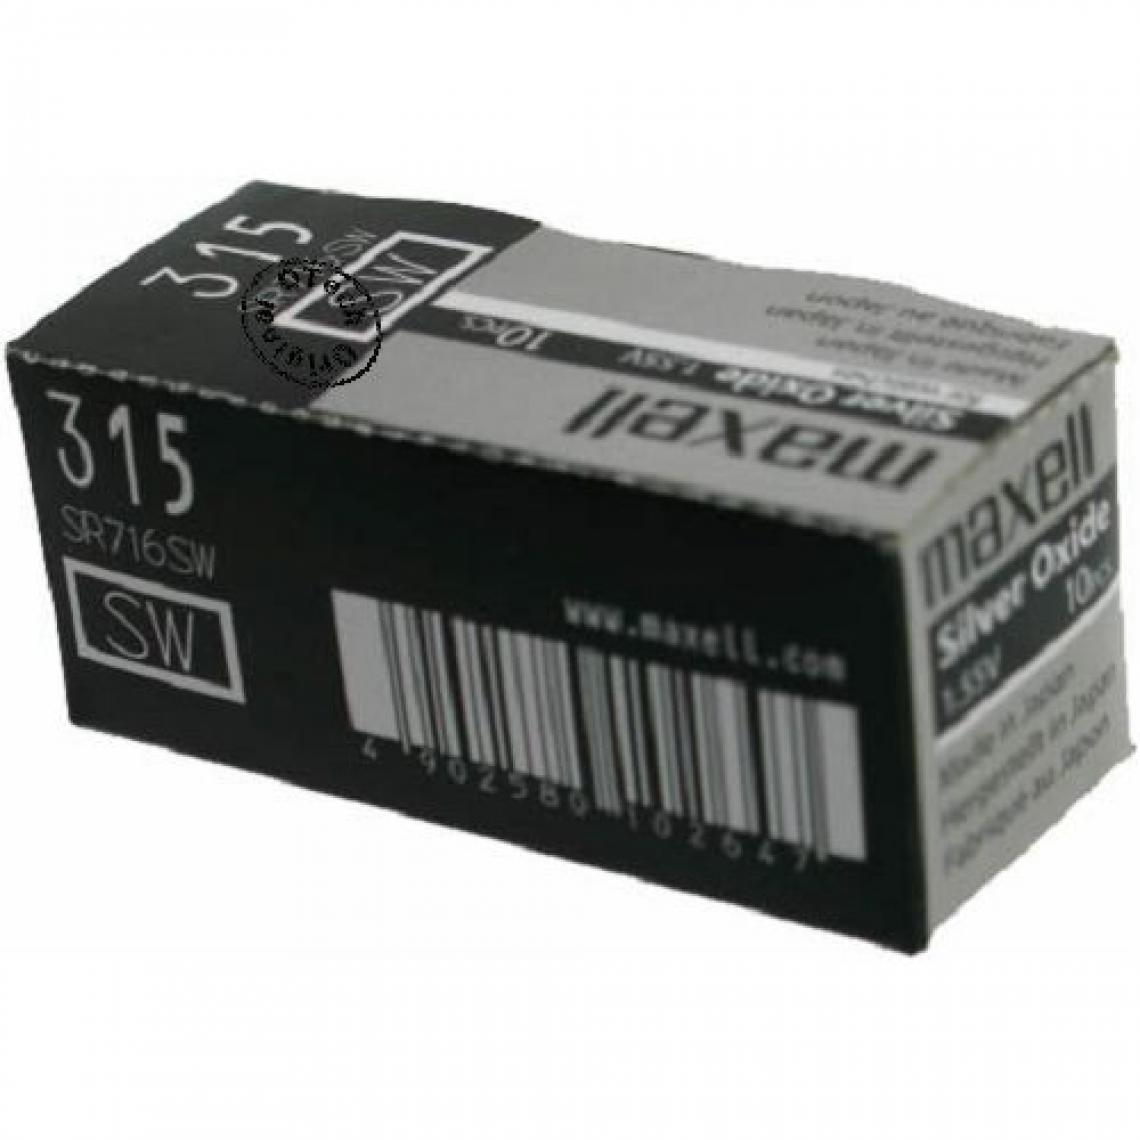 Otech - Pack de 10 piles maxell pour DIVERS SR716SW (SR67) - Piles rechargeables